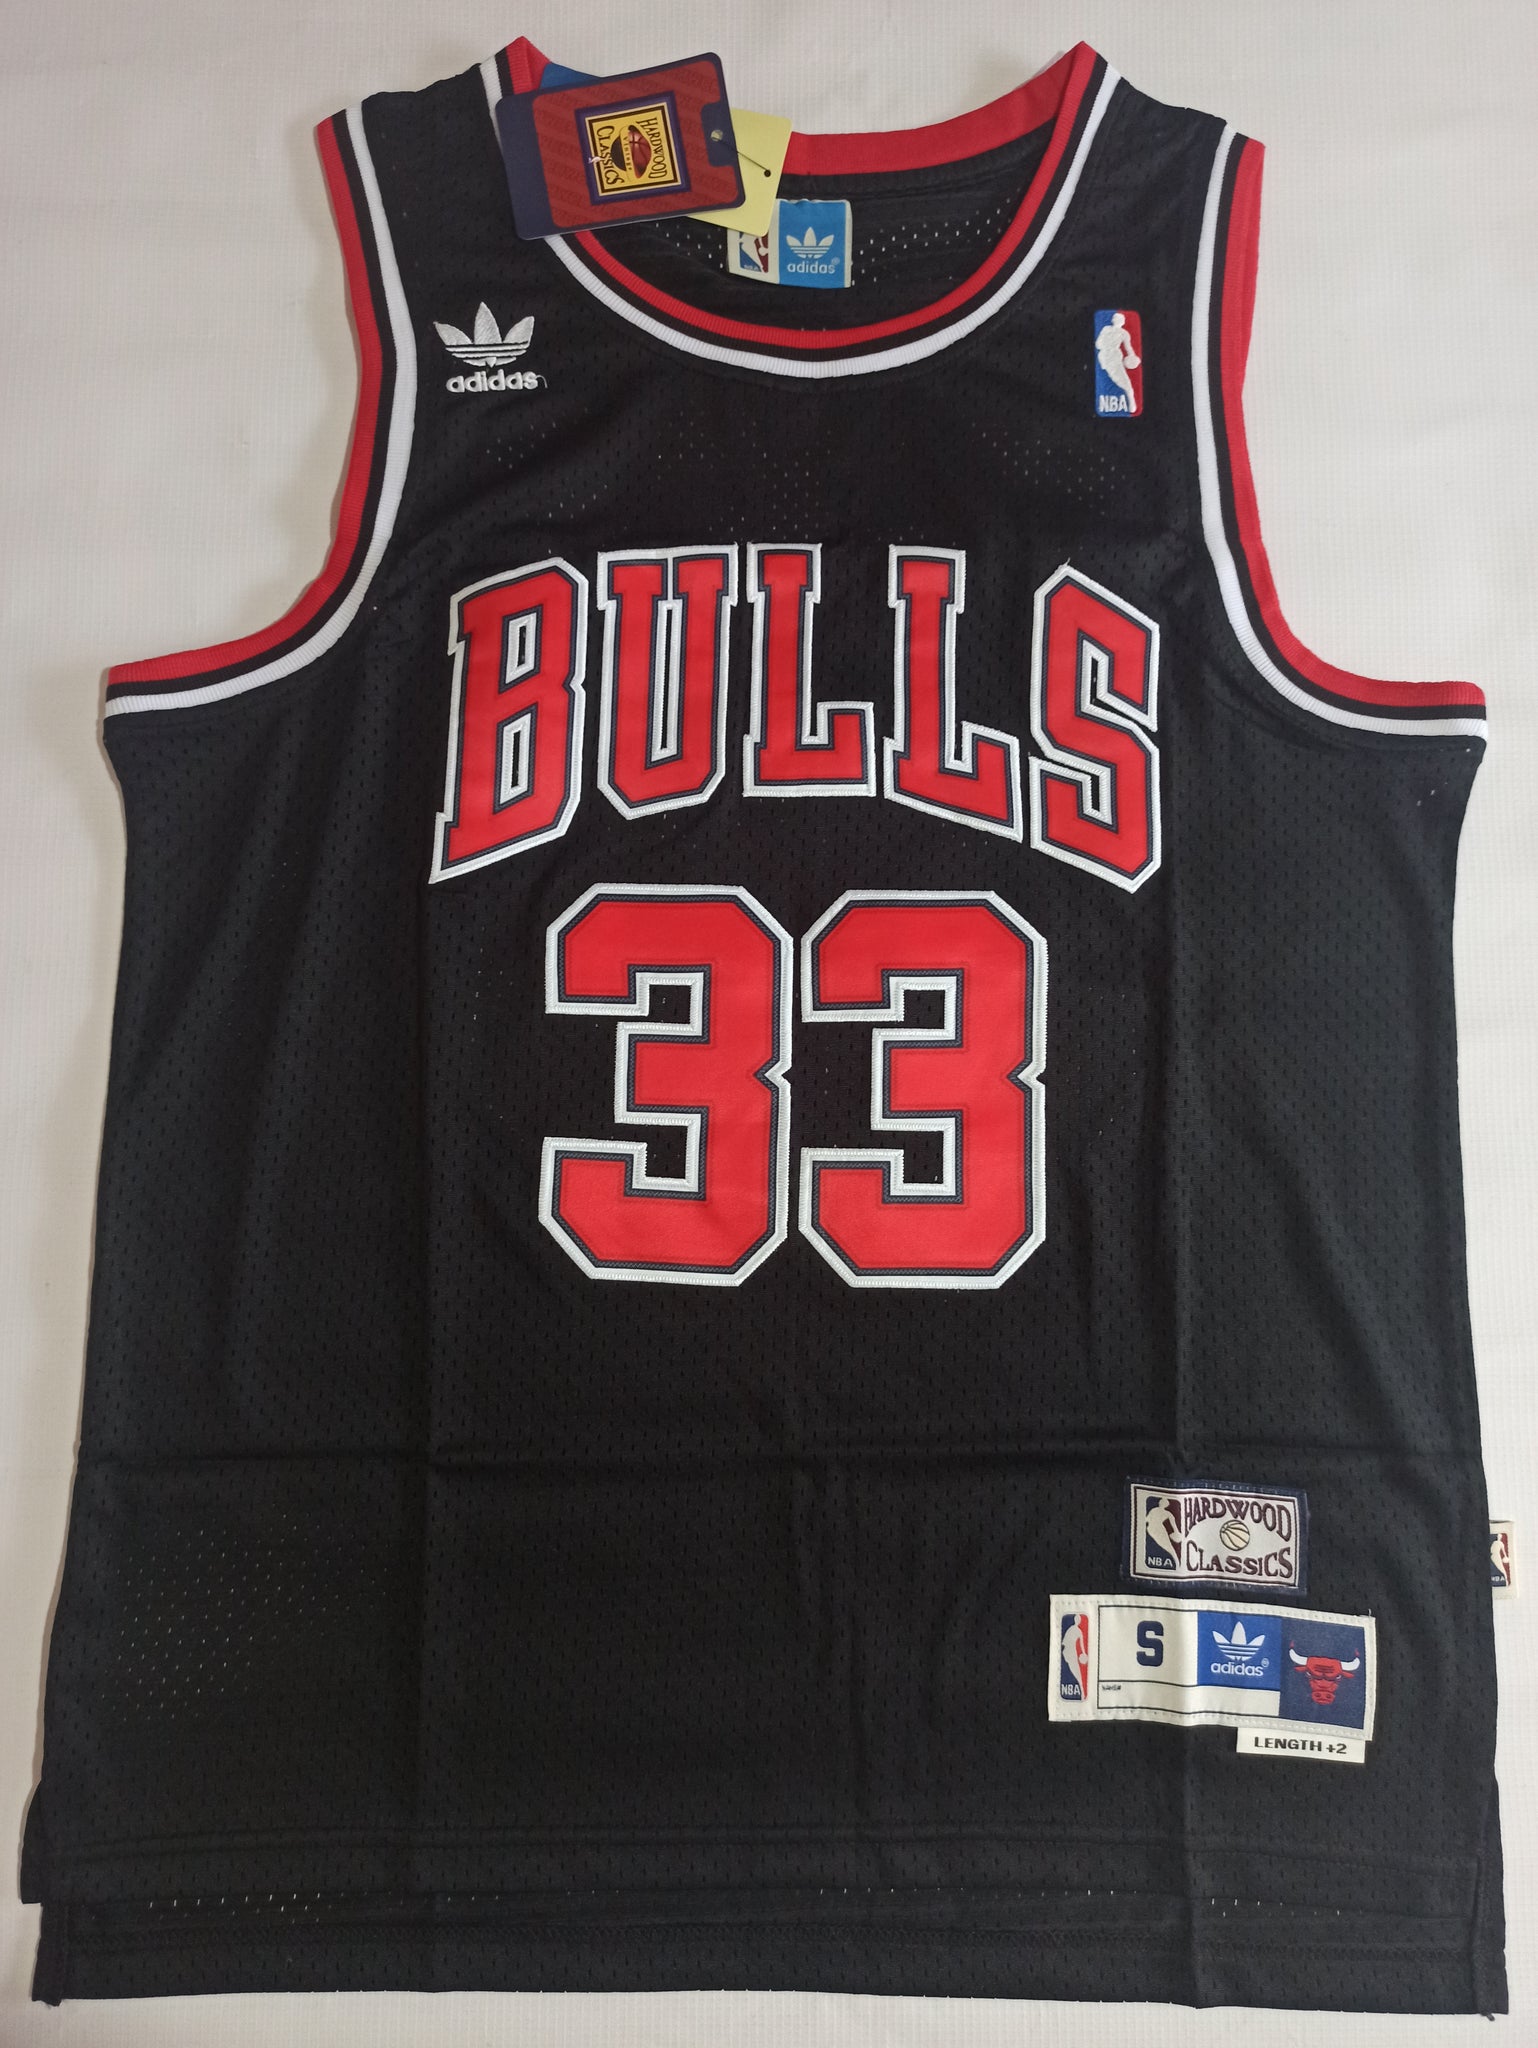 Camiseta Chicago Bulls Retro - Pippen